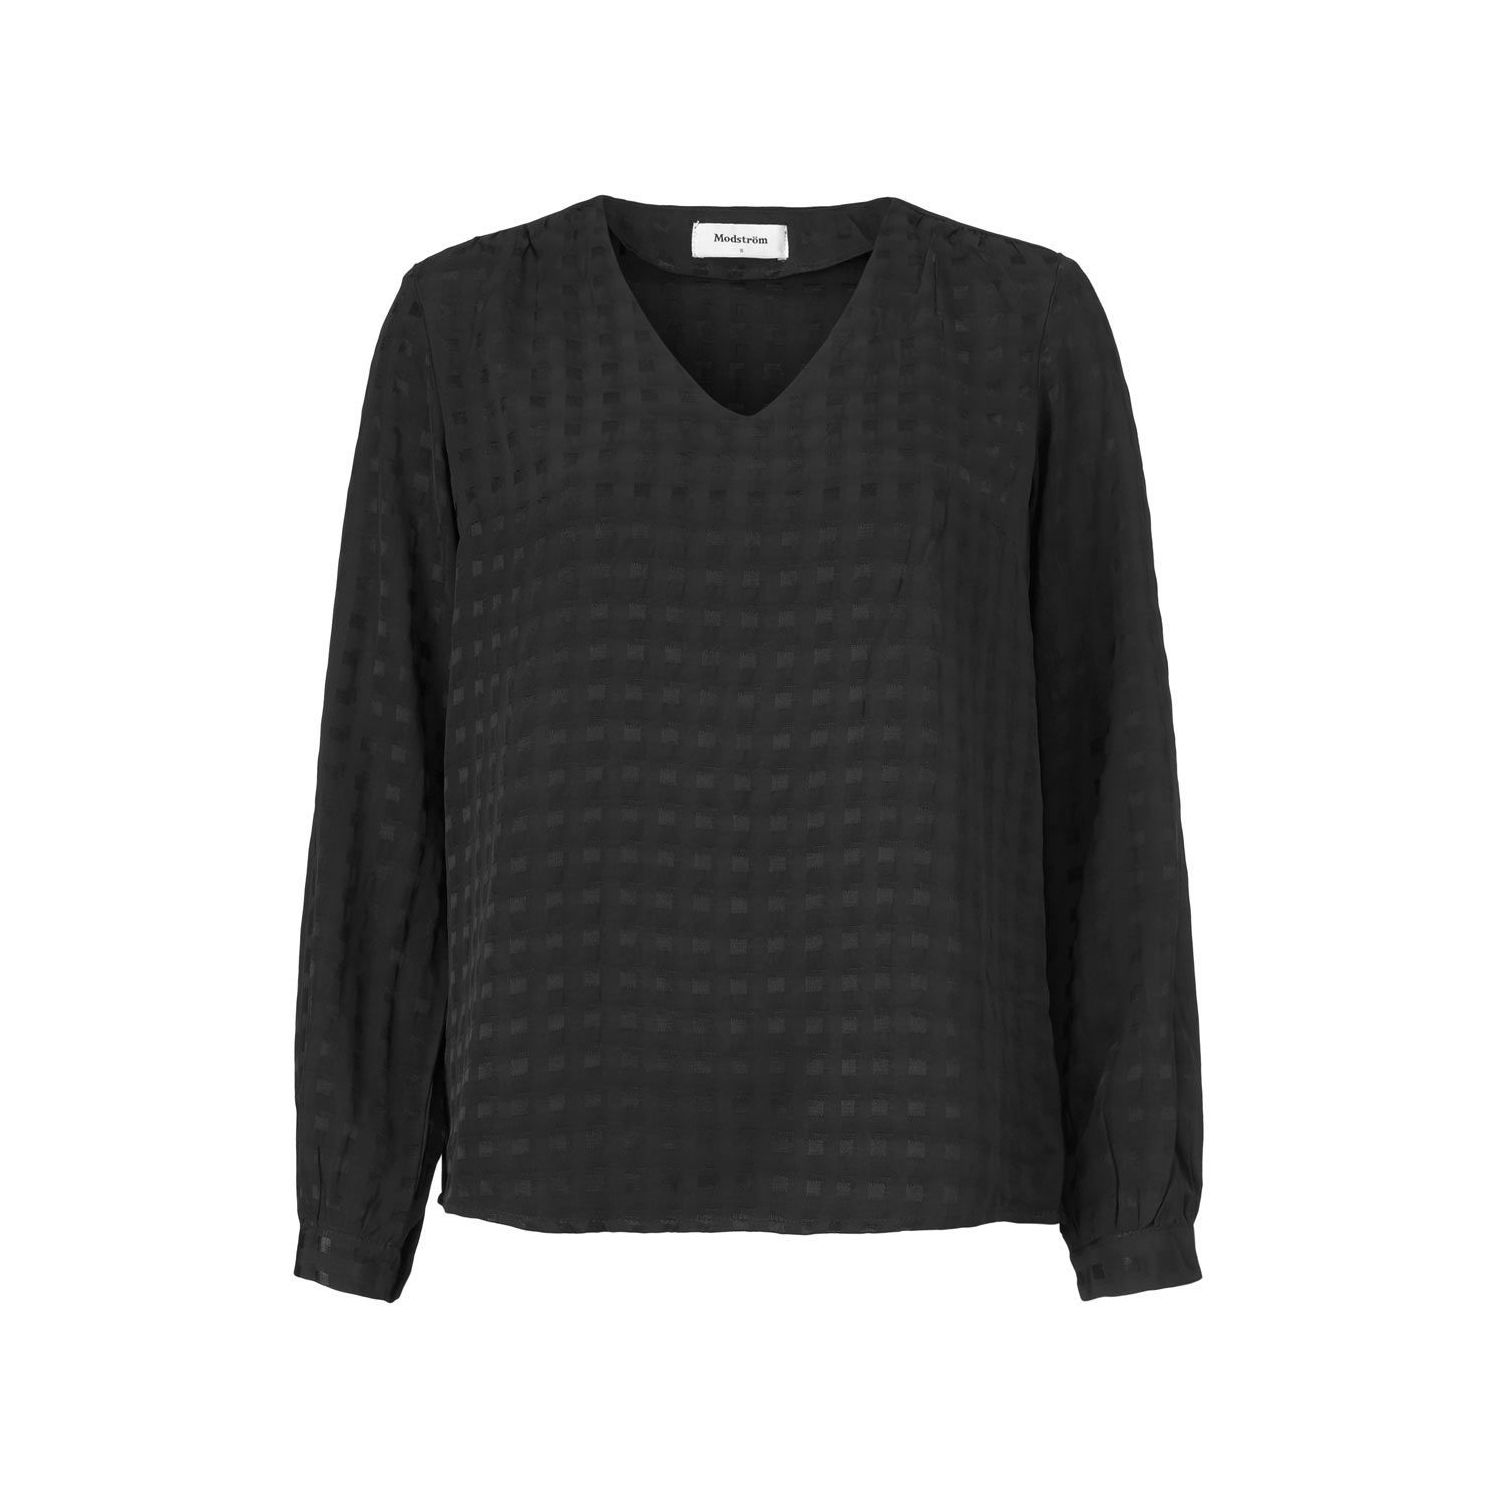 Modström sullivan top blouse black